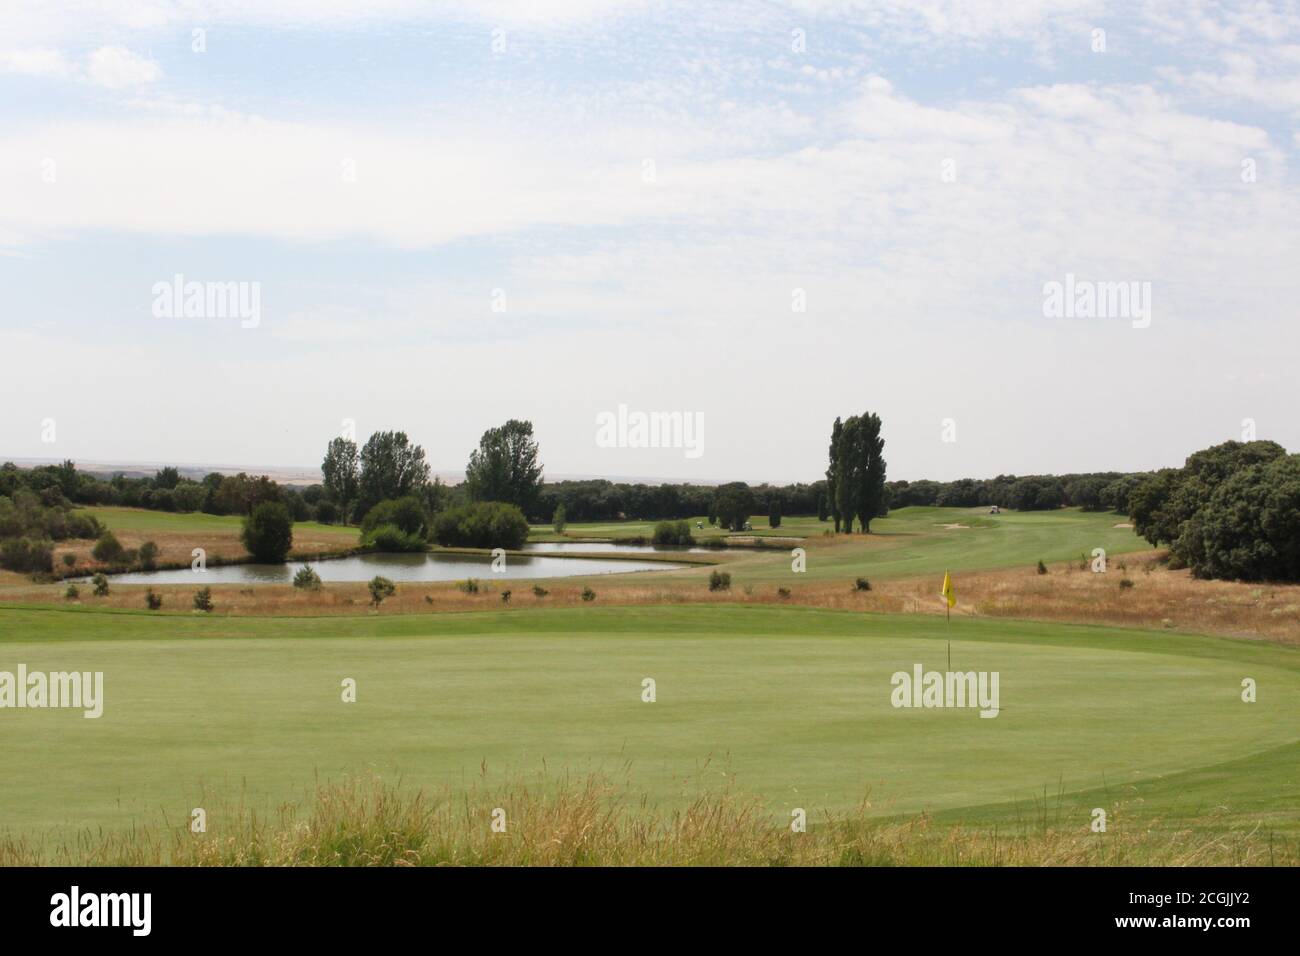 Imágenes de jugadores de golf - Campo de golf Stock Photo